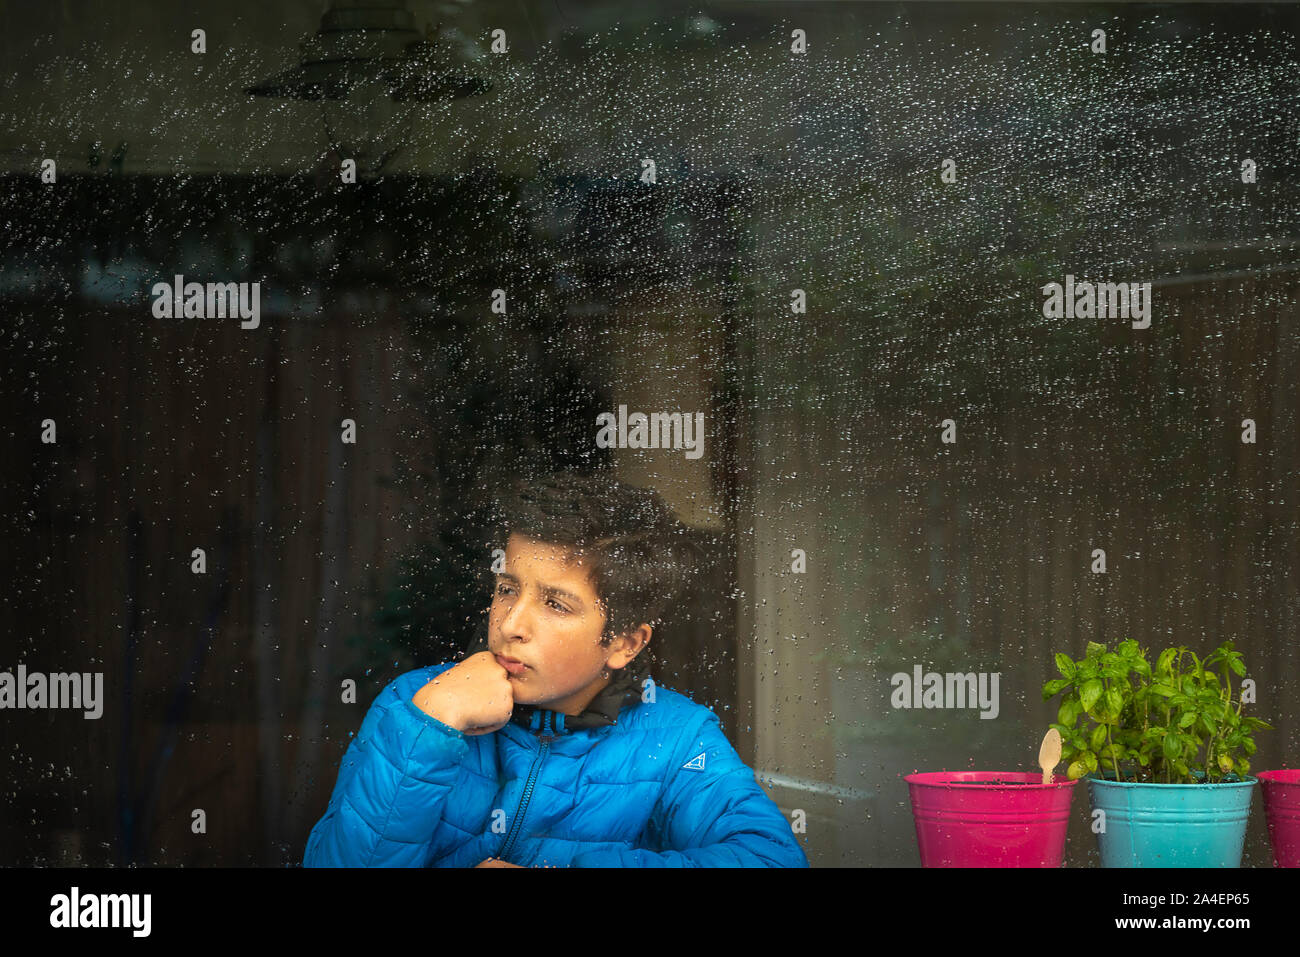 Ragazzo che guarda fuori dalla finestra in una piovosa giornata inverni, Surrey, Regno Unito Foto Stock